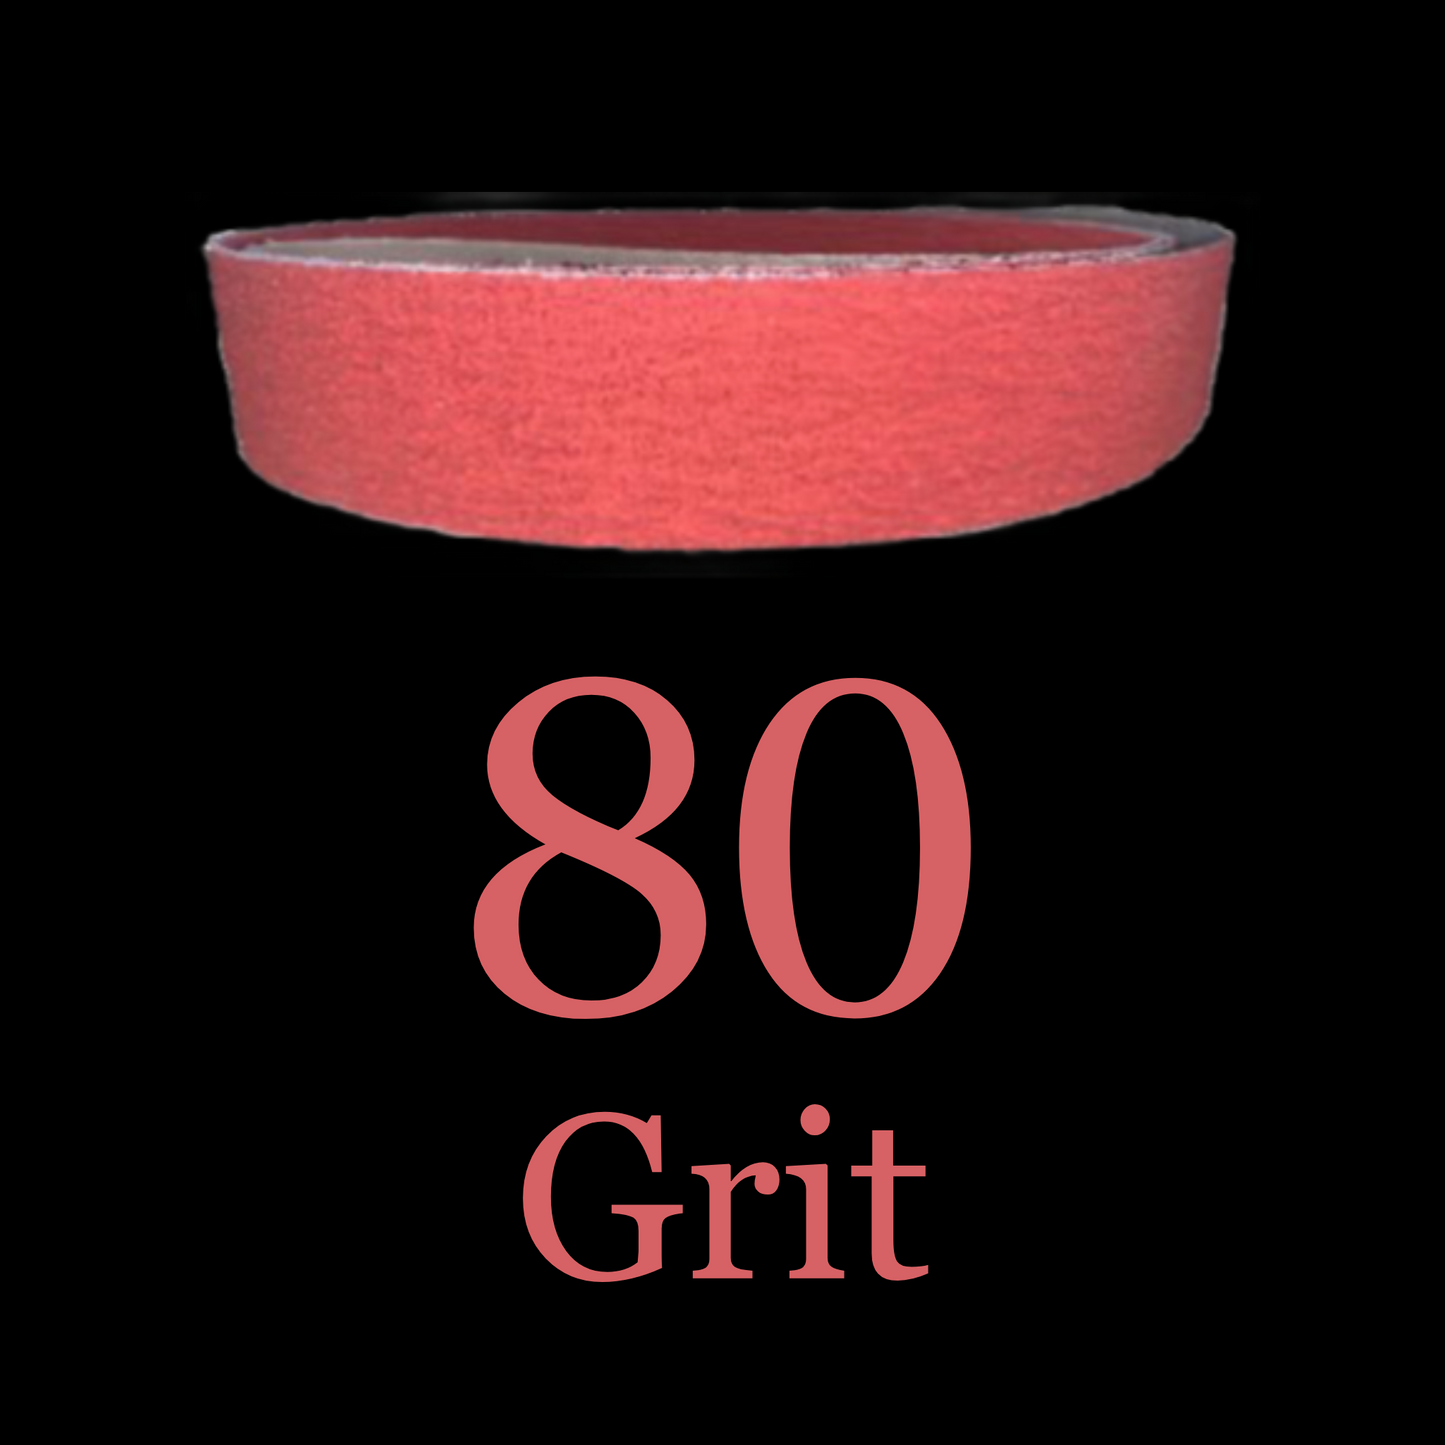 2” x 72” Red Ripper Phoenix Premium Ceramic Belts 80 Grit